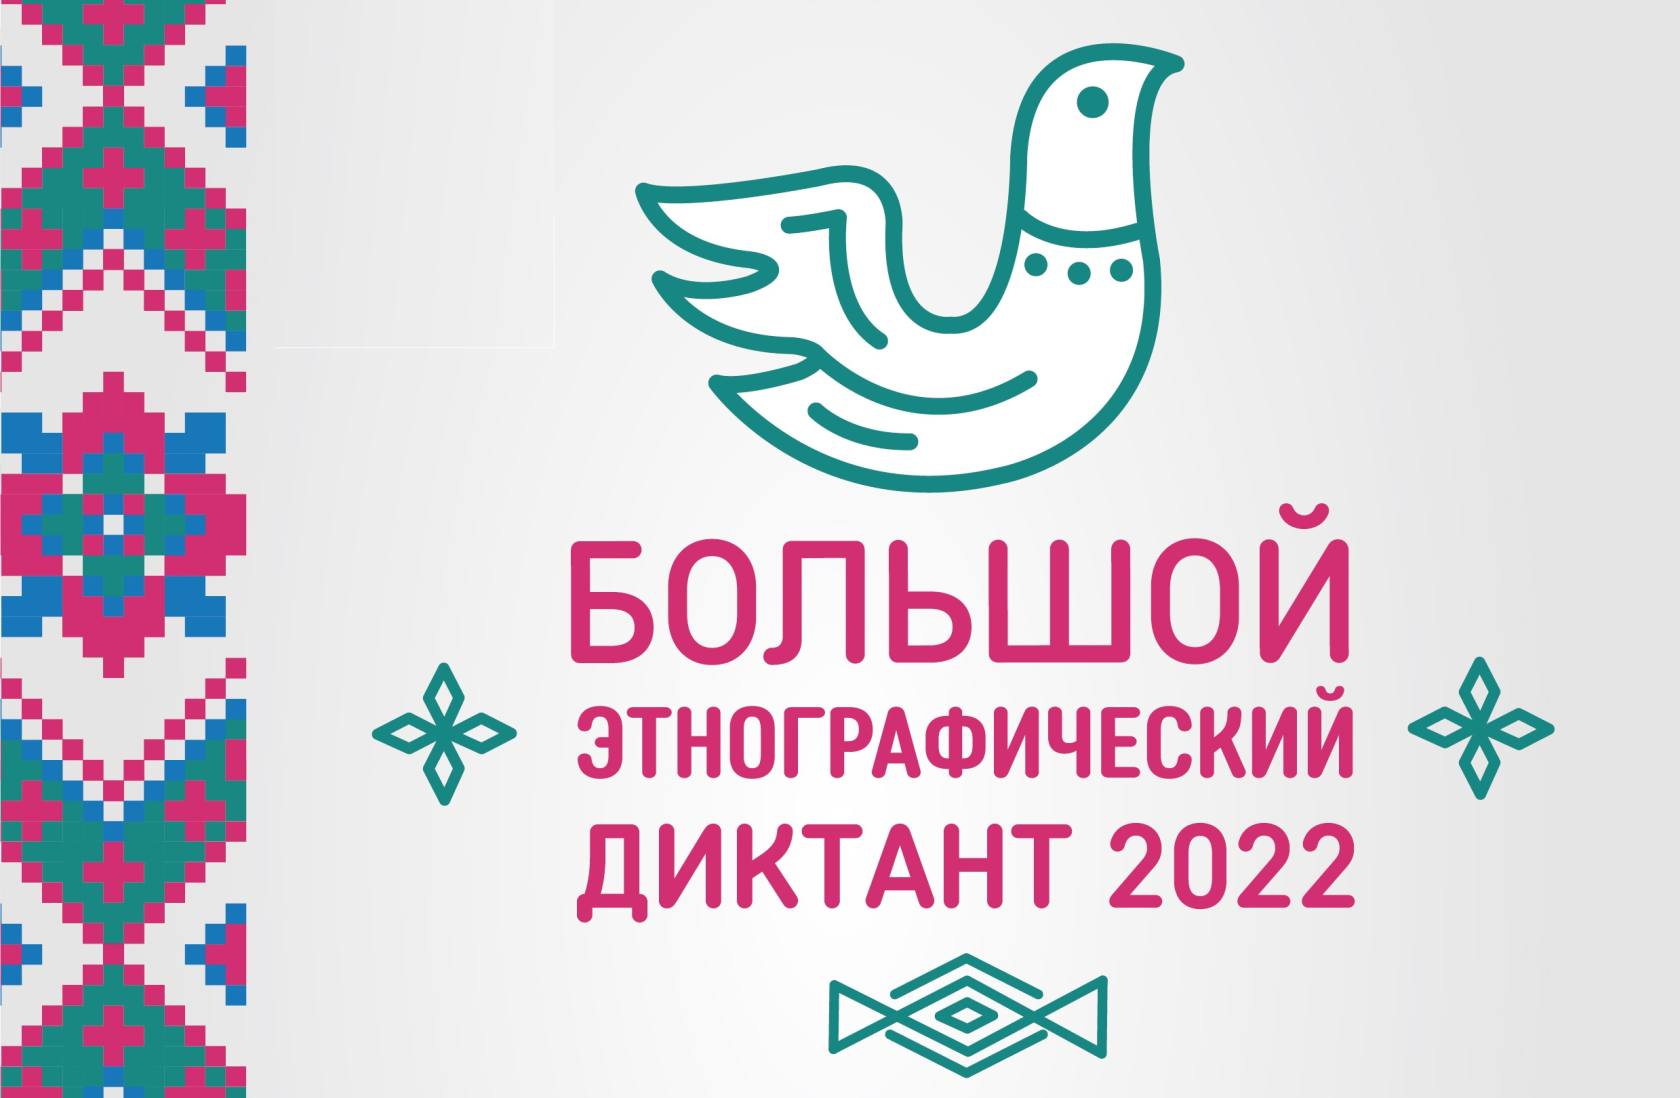 Большой Этнографический диктант 2022.